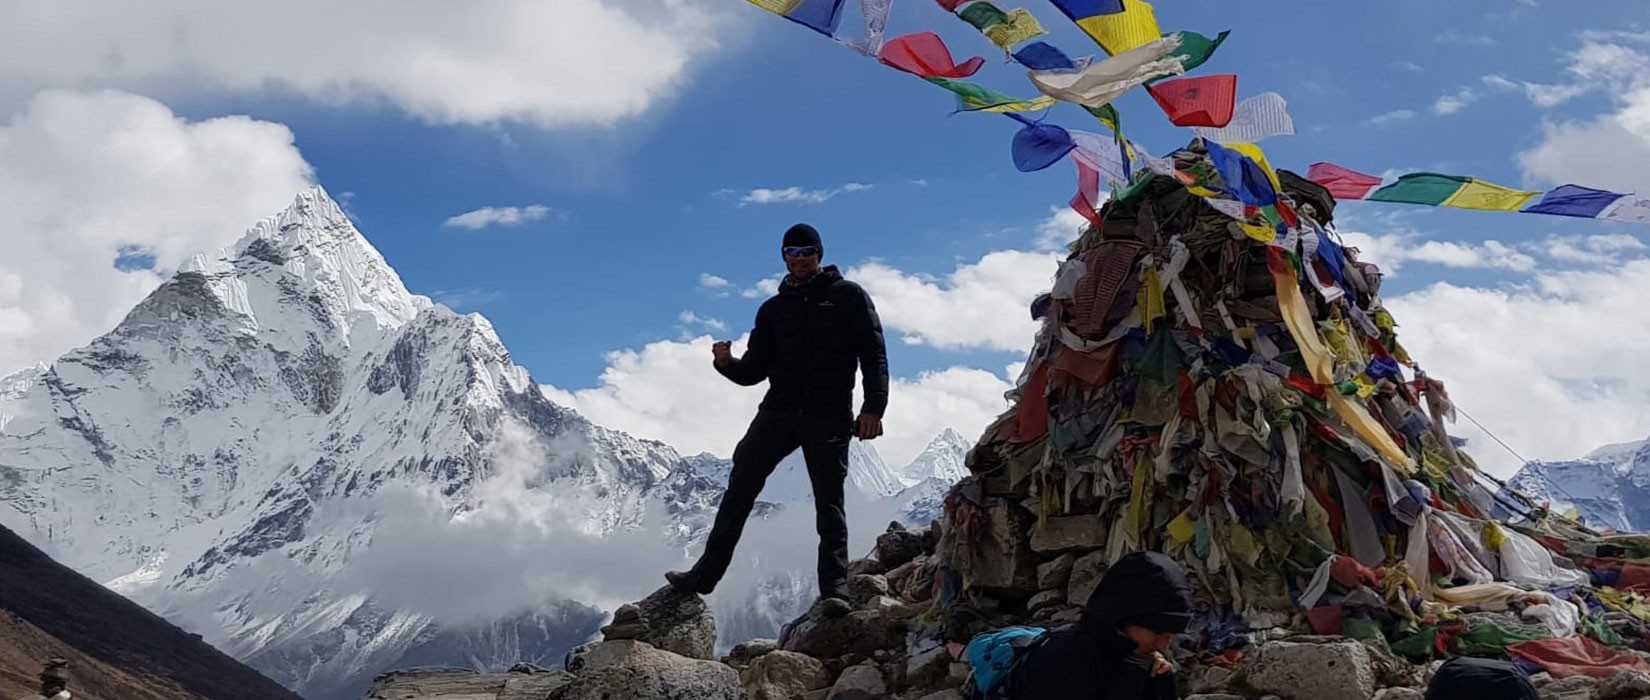 Let’s Make Your Everest Base Camp Trek Incredible